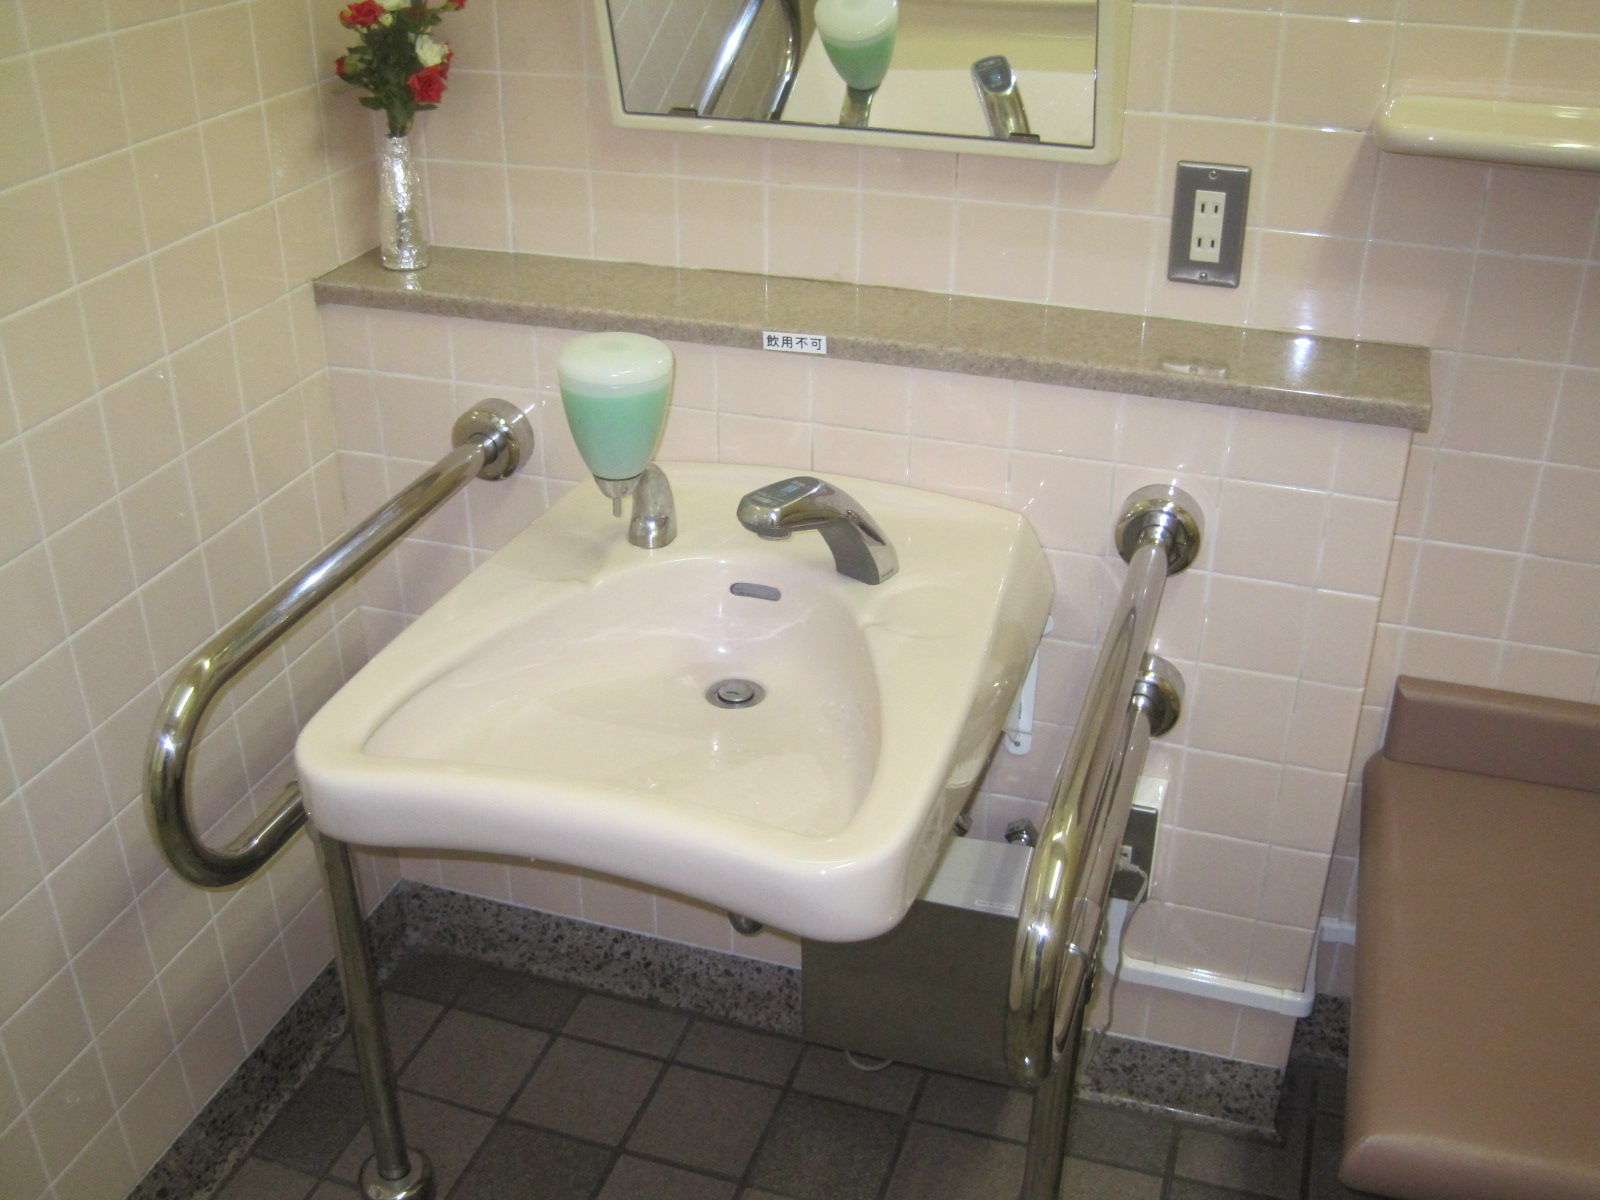 トイレ設備調査日記atosatu 道央自動車道輪厚サービスエリア上り線のトイレ